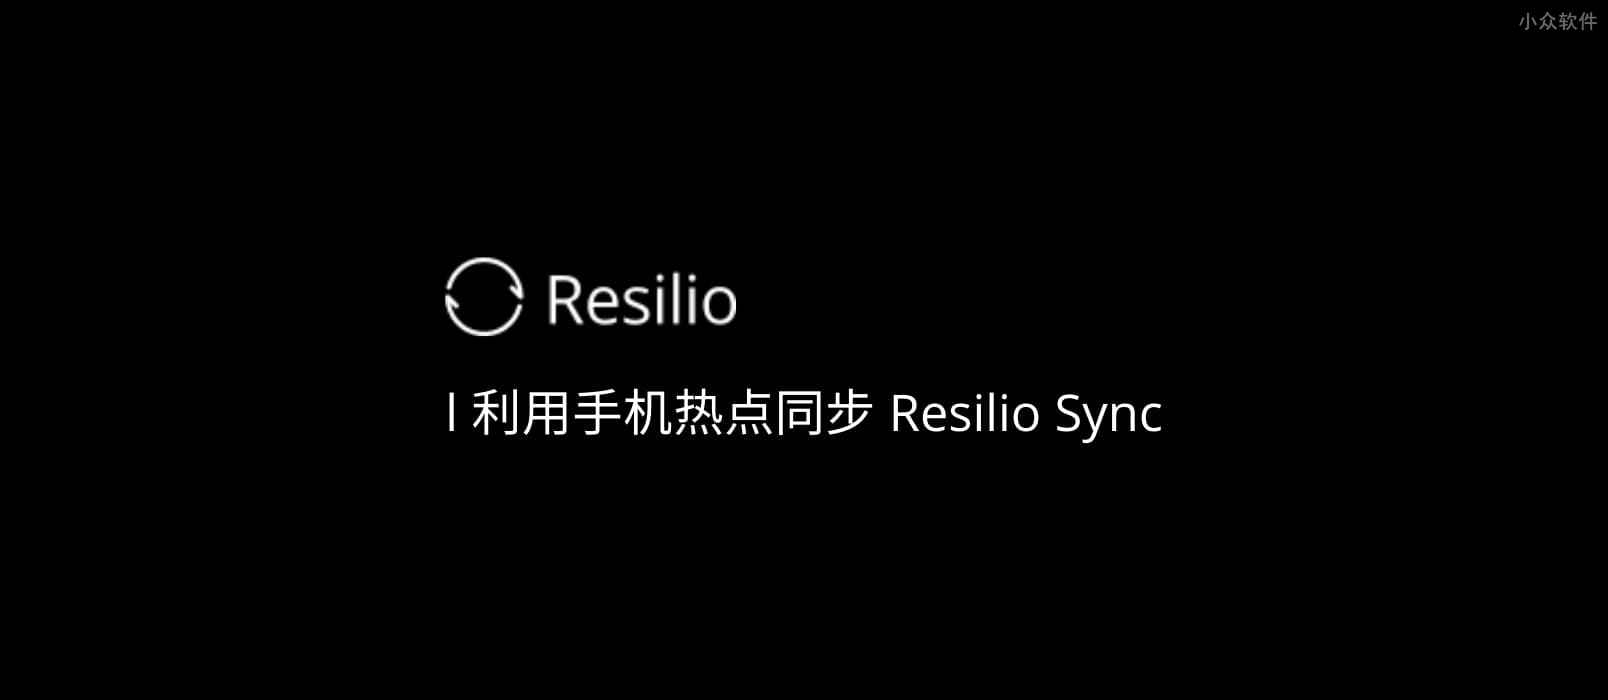 如何利用手机热点使用 Resilio Sync 同步数据？ 1